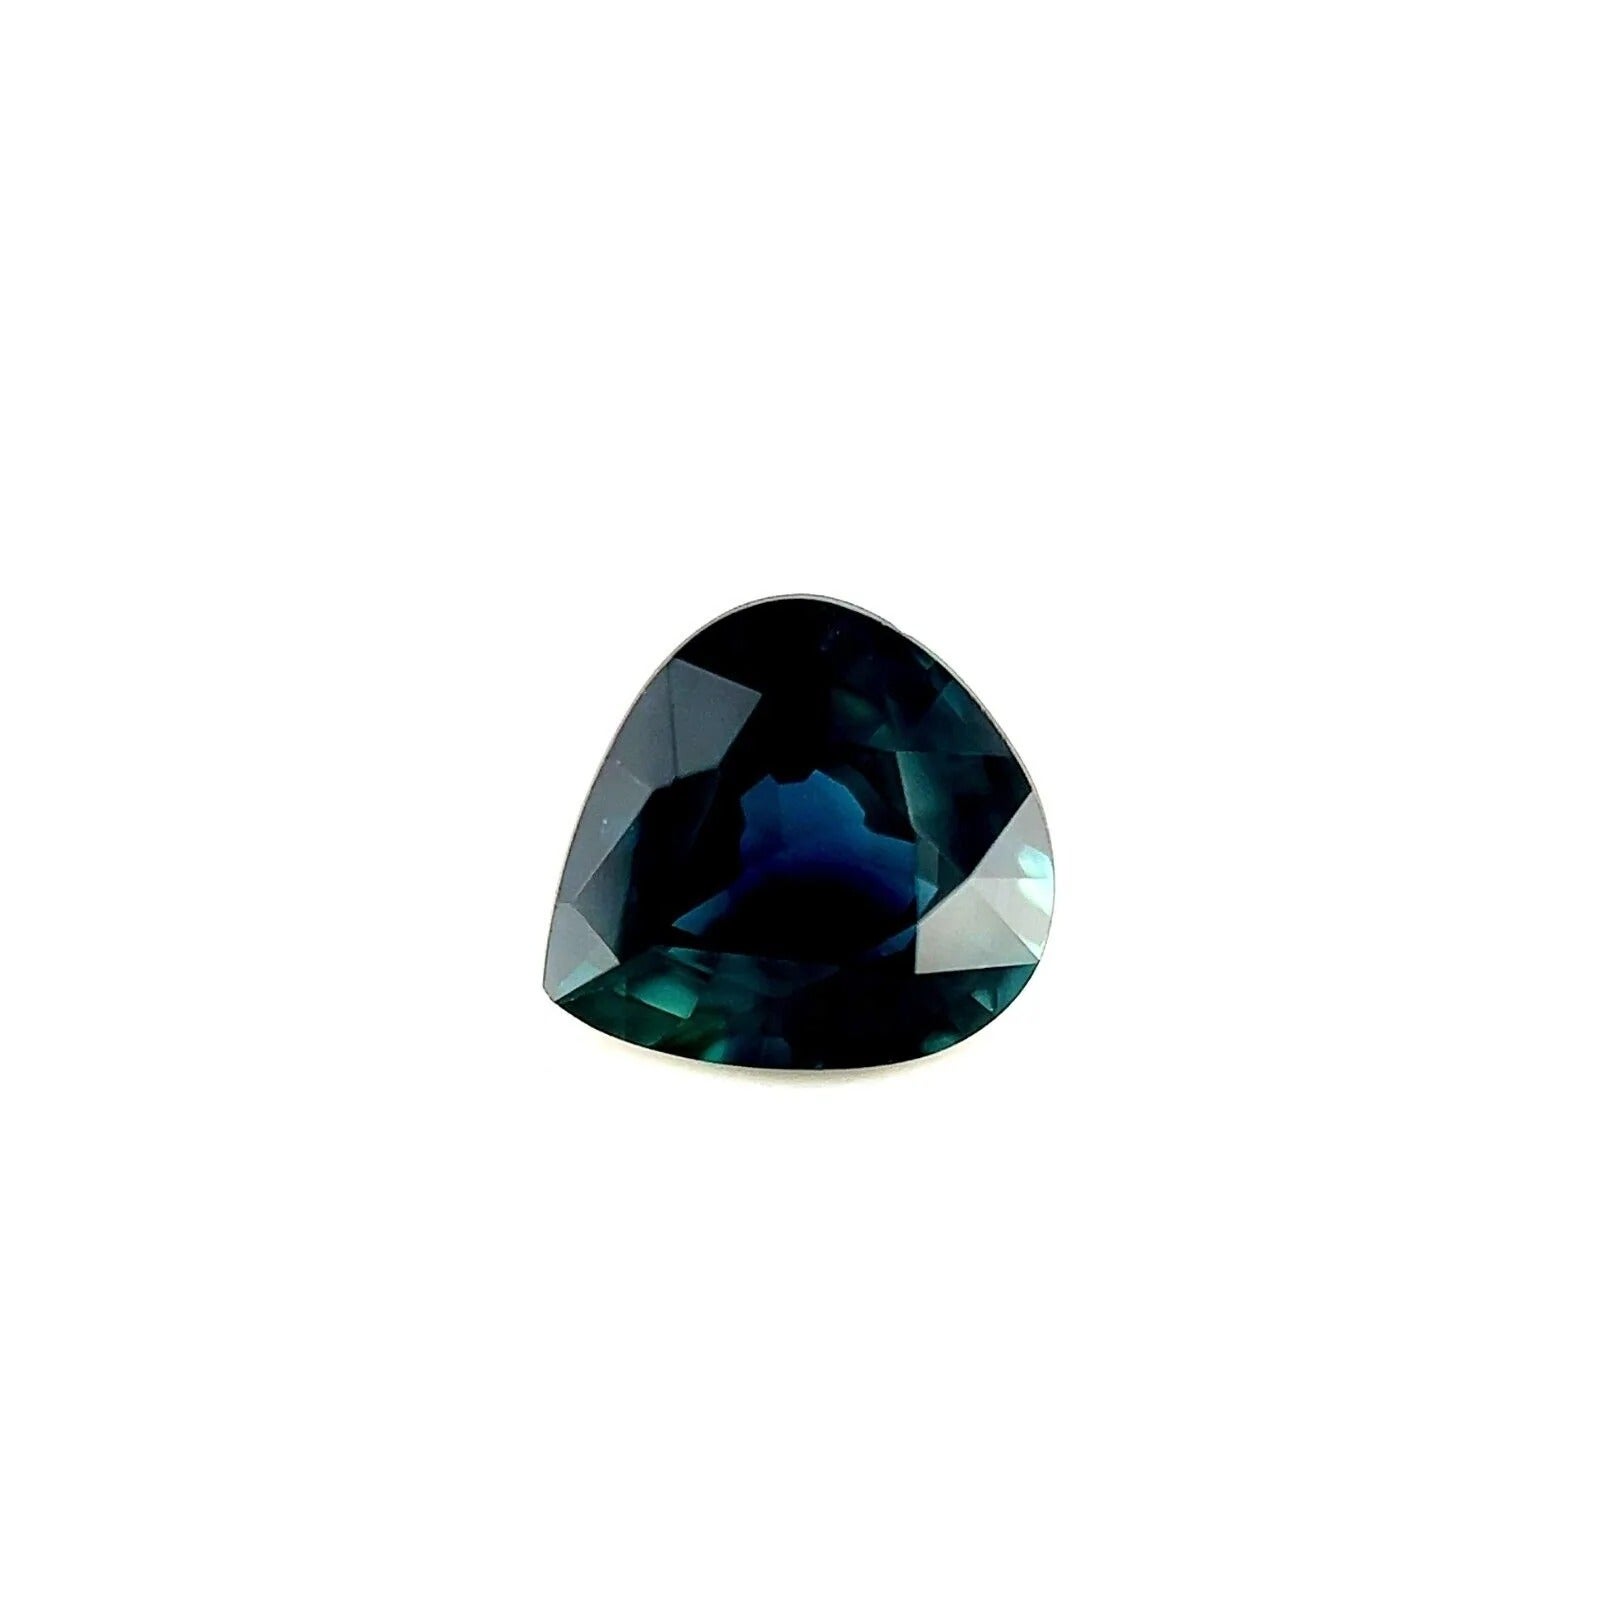 Fine saphir australien bleu sarcelle profond taille poire et larme 0,96 carat, rare